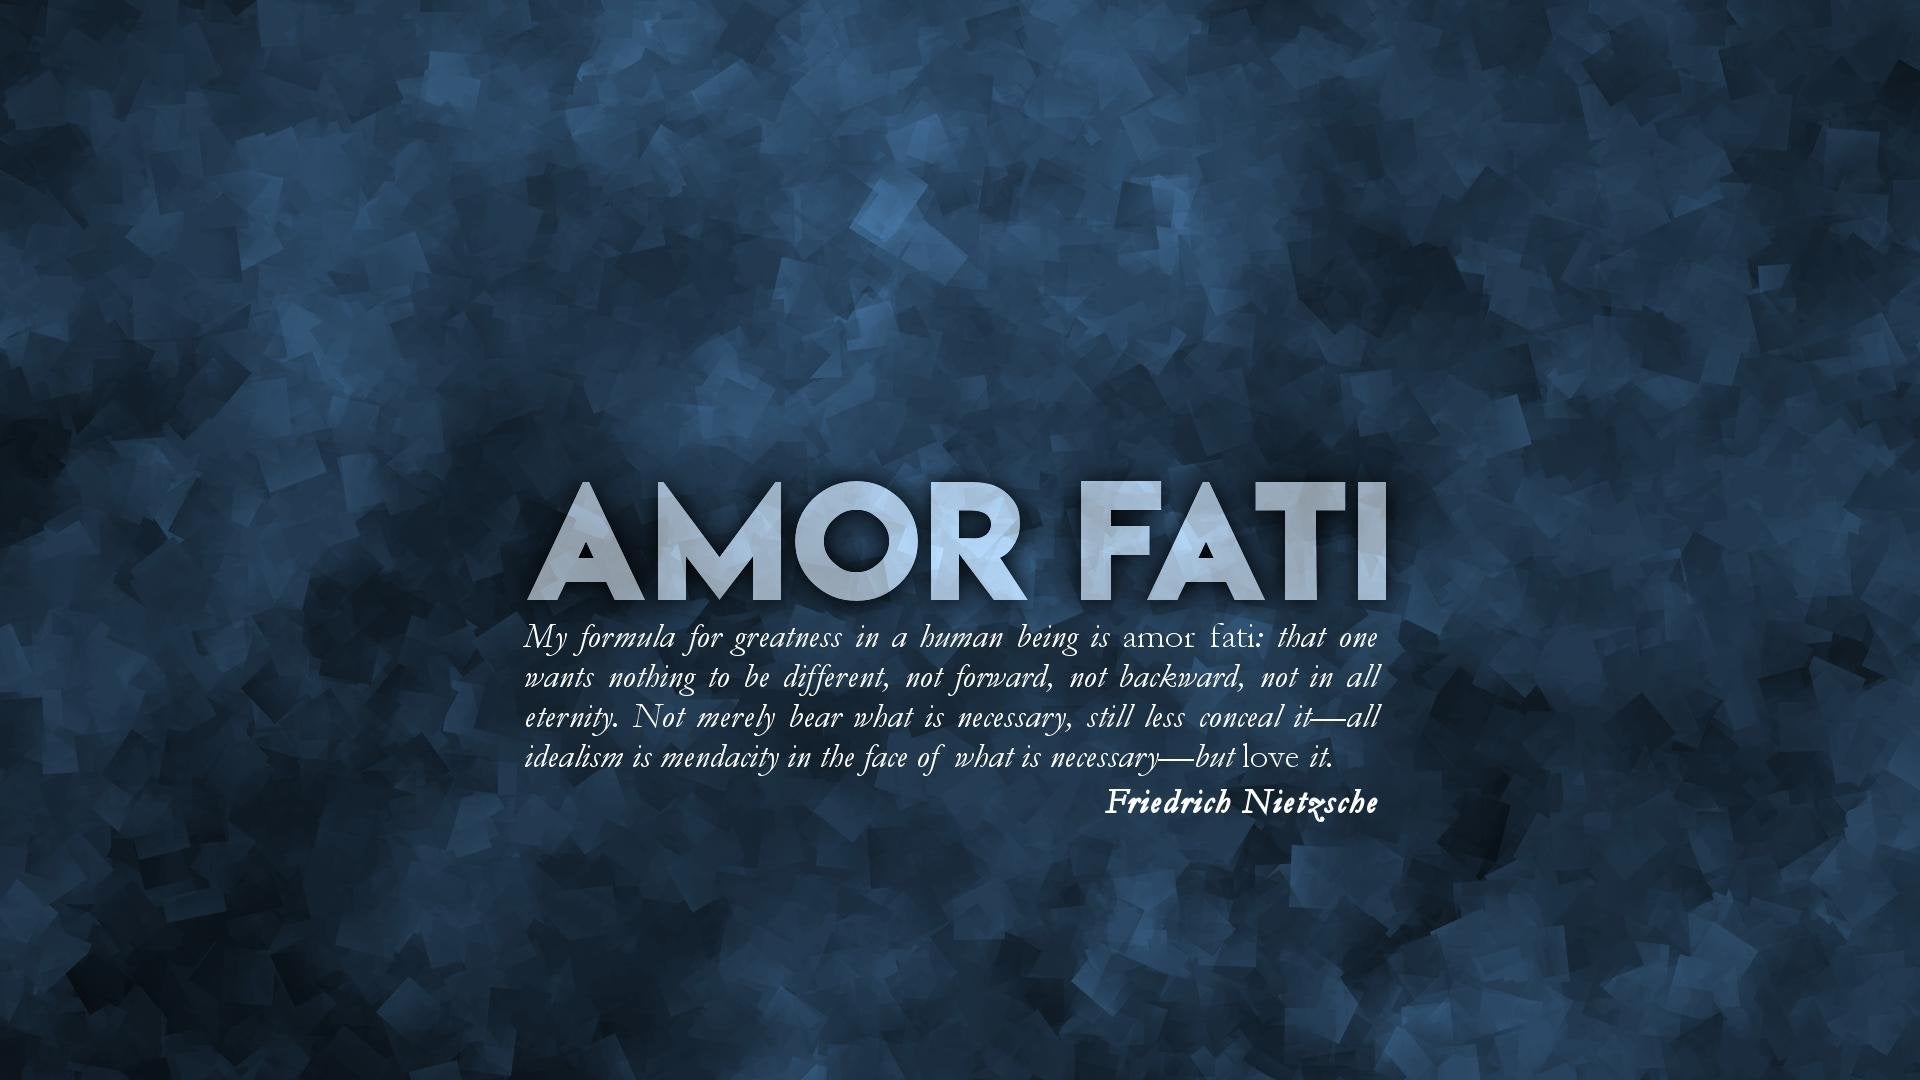 20+] Amor Fati Wallpapers - WallpaperSafari